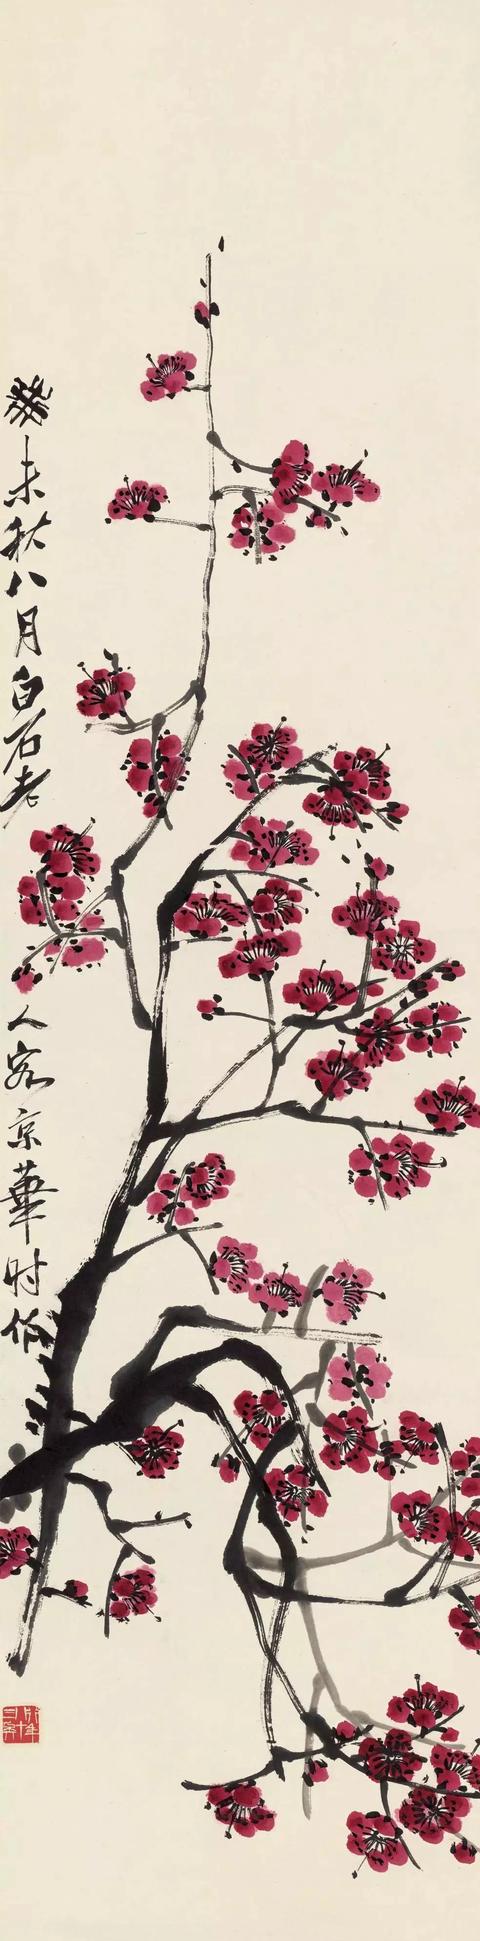 齐白石擅长的大写意花卉绘画题材，满纸充满鸟语花香